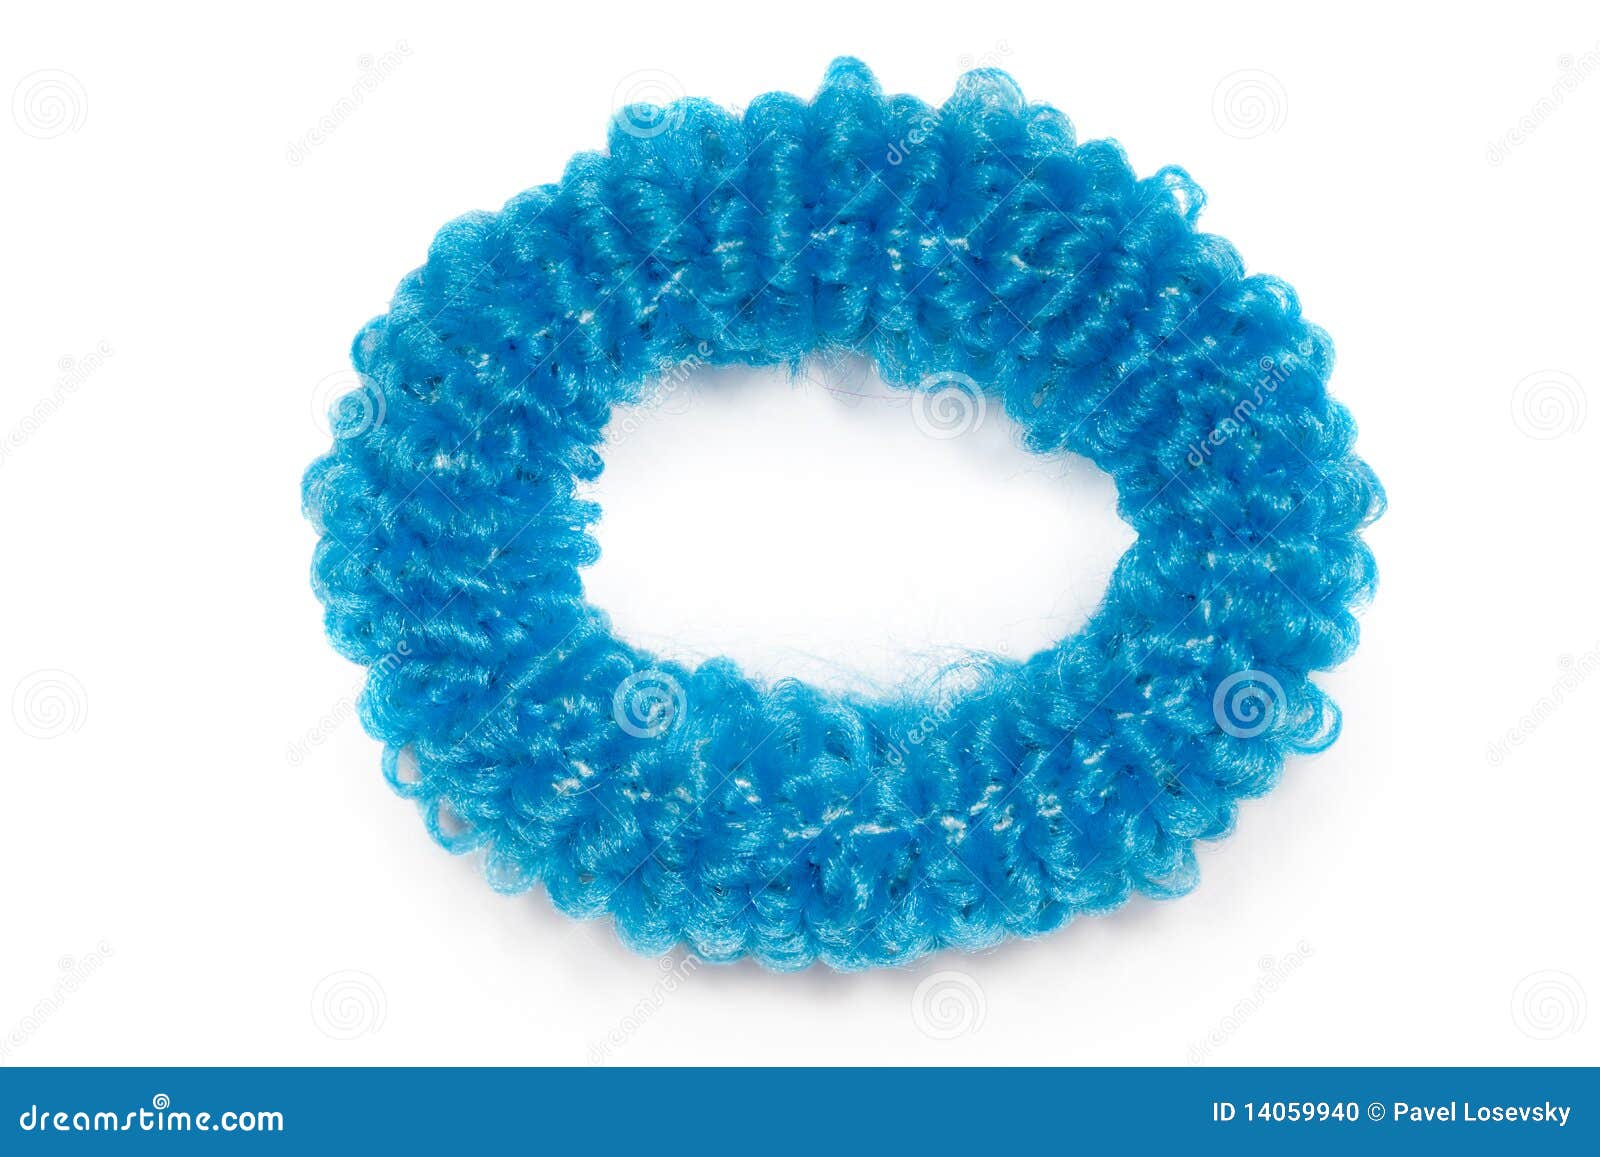 blue velvet hair scrunchies